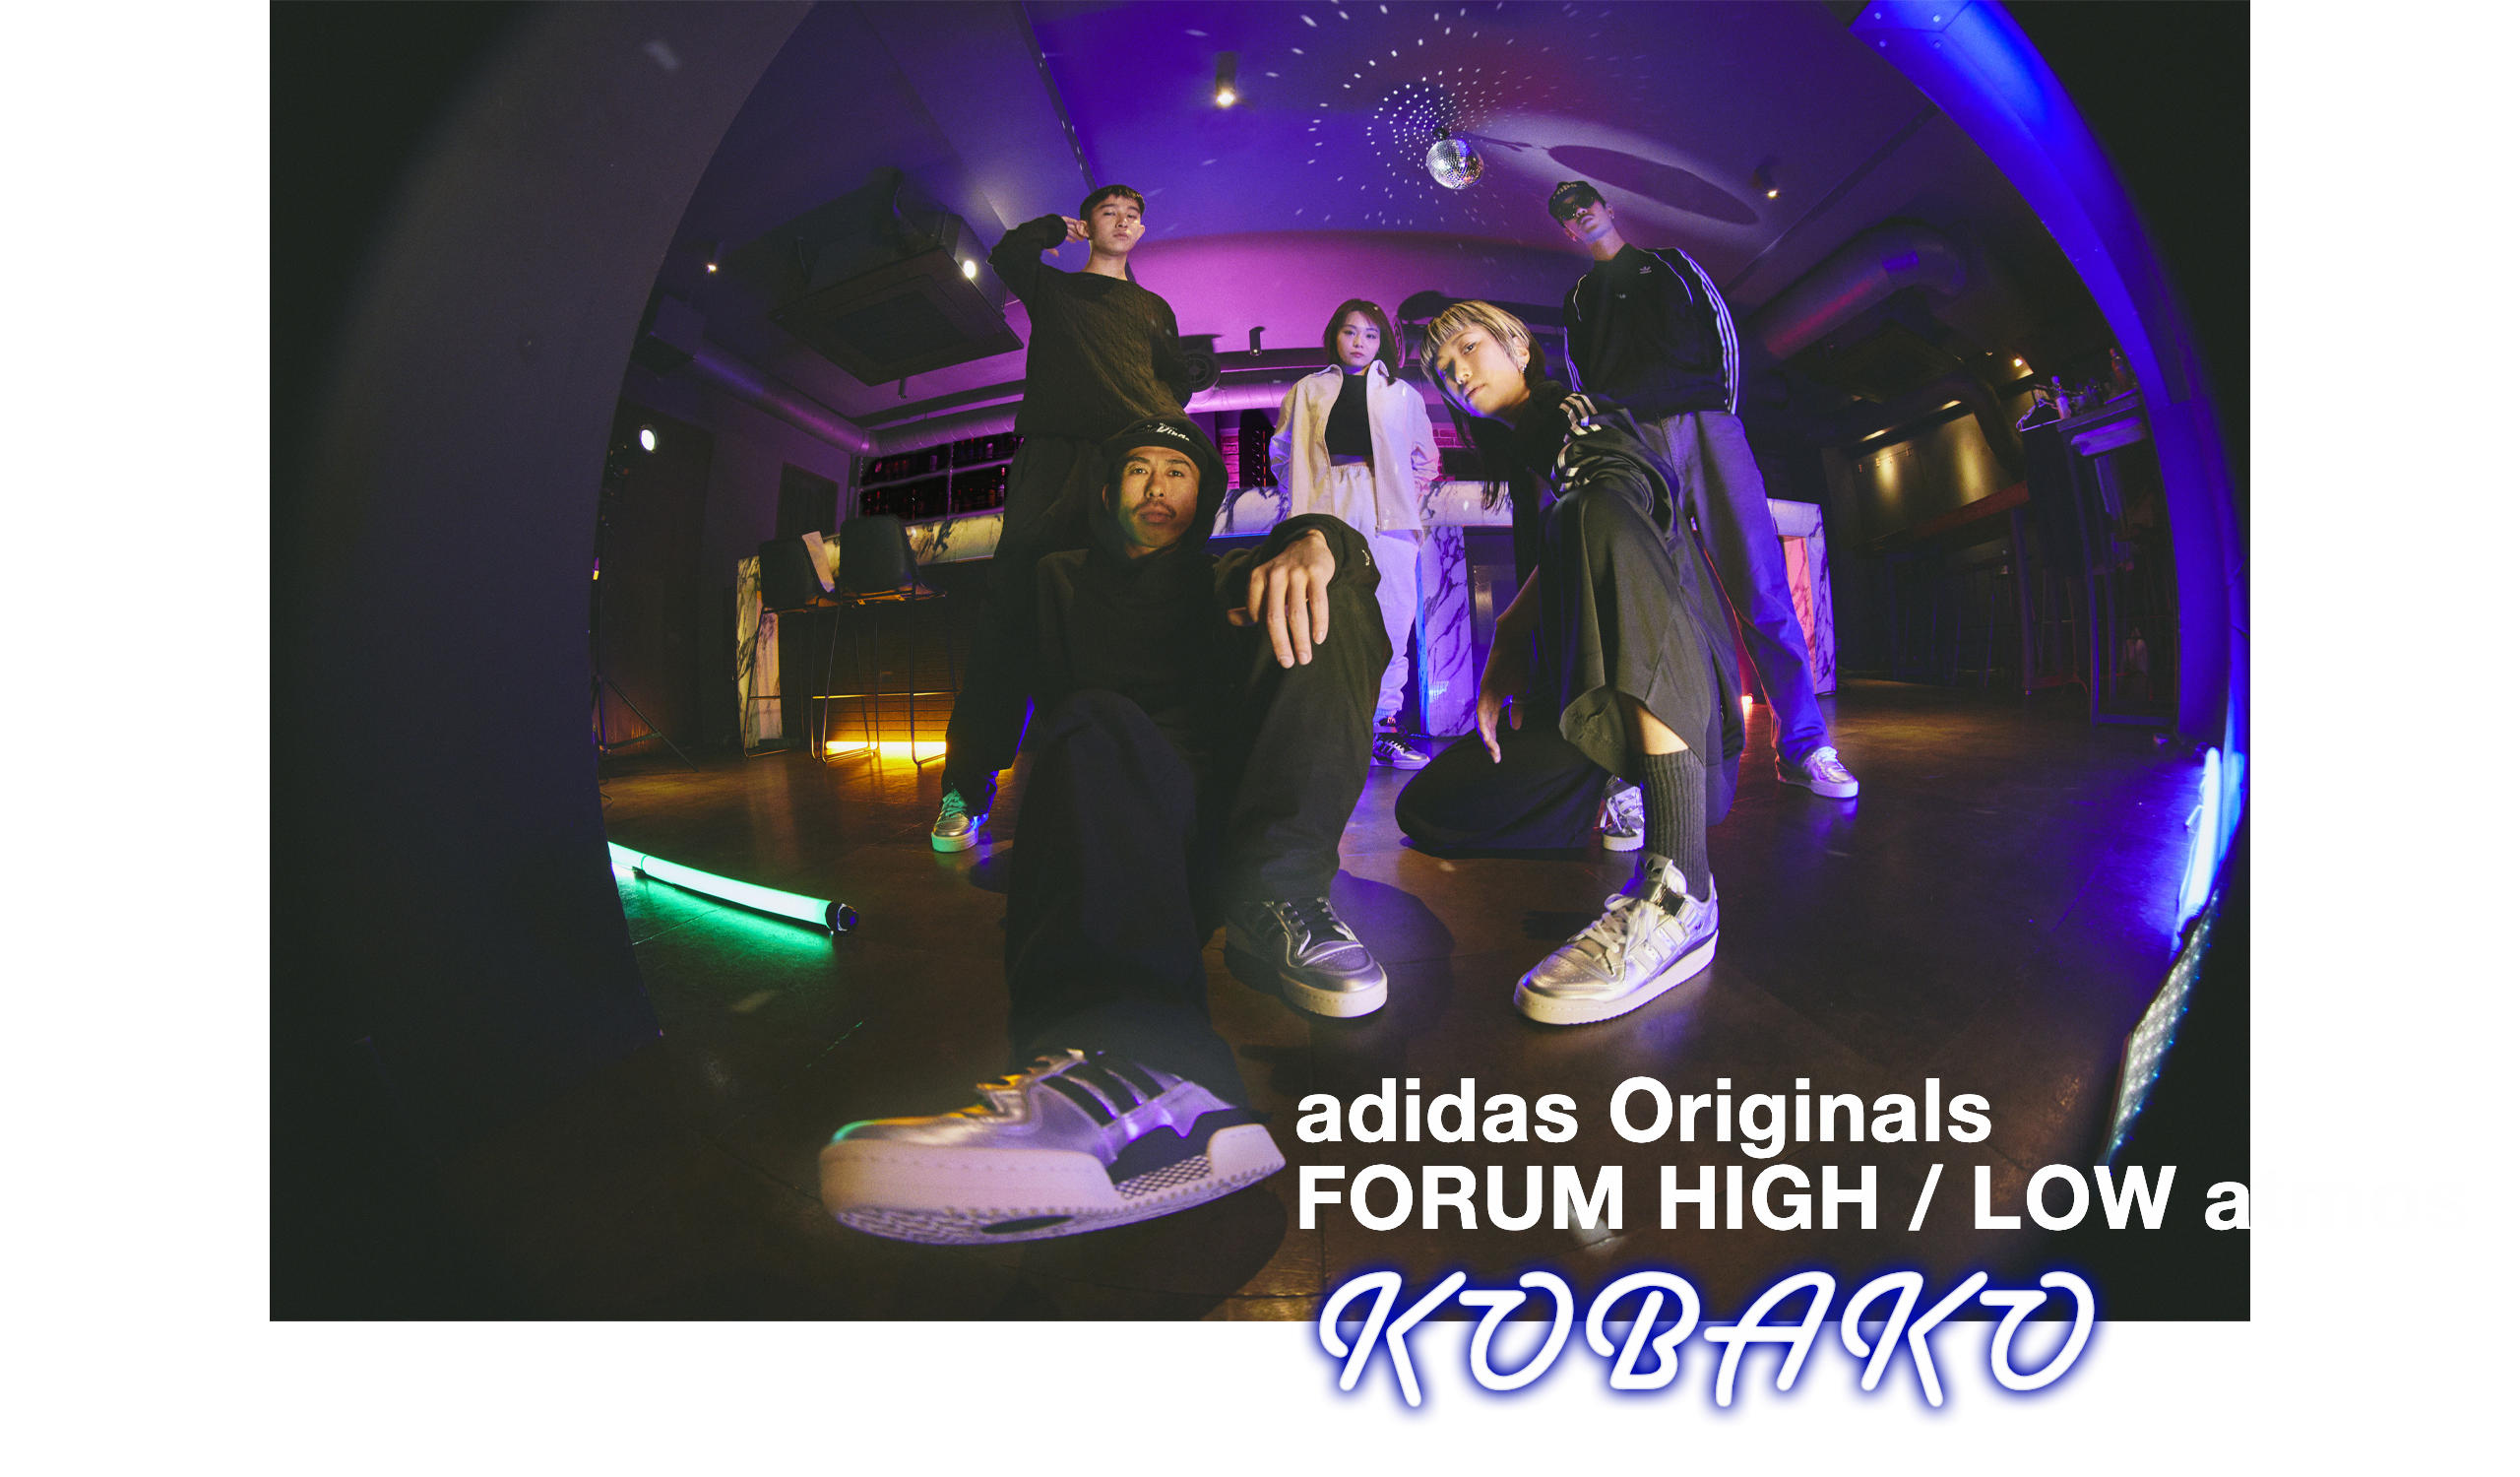 "adidas Originals FORUM HIGH / LOW atmos "KOBAKO""